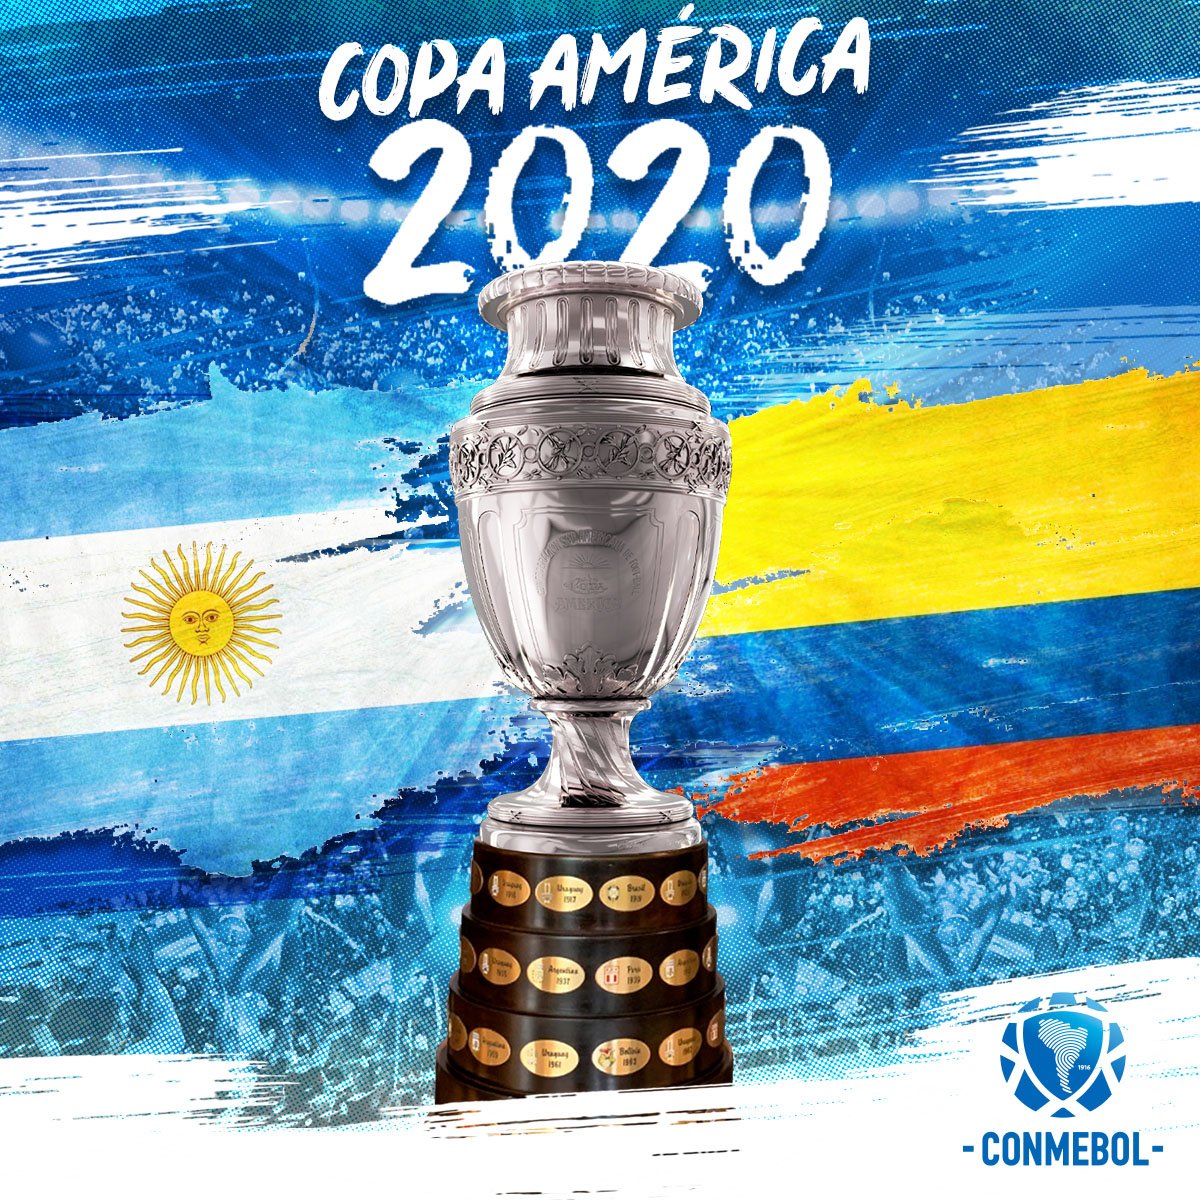 Jadwal Copa America 2020, Argentina Dan Kolombia Jadi Tuan Rumah